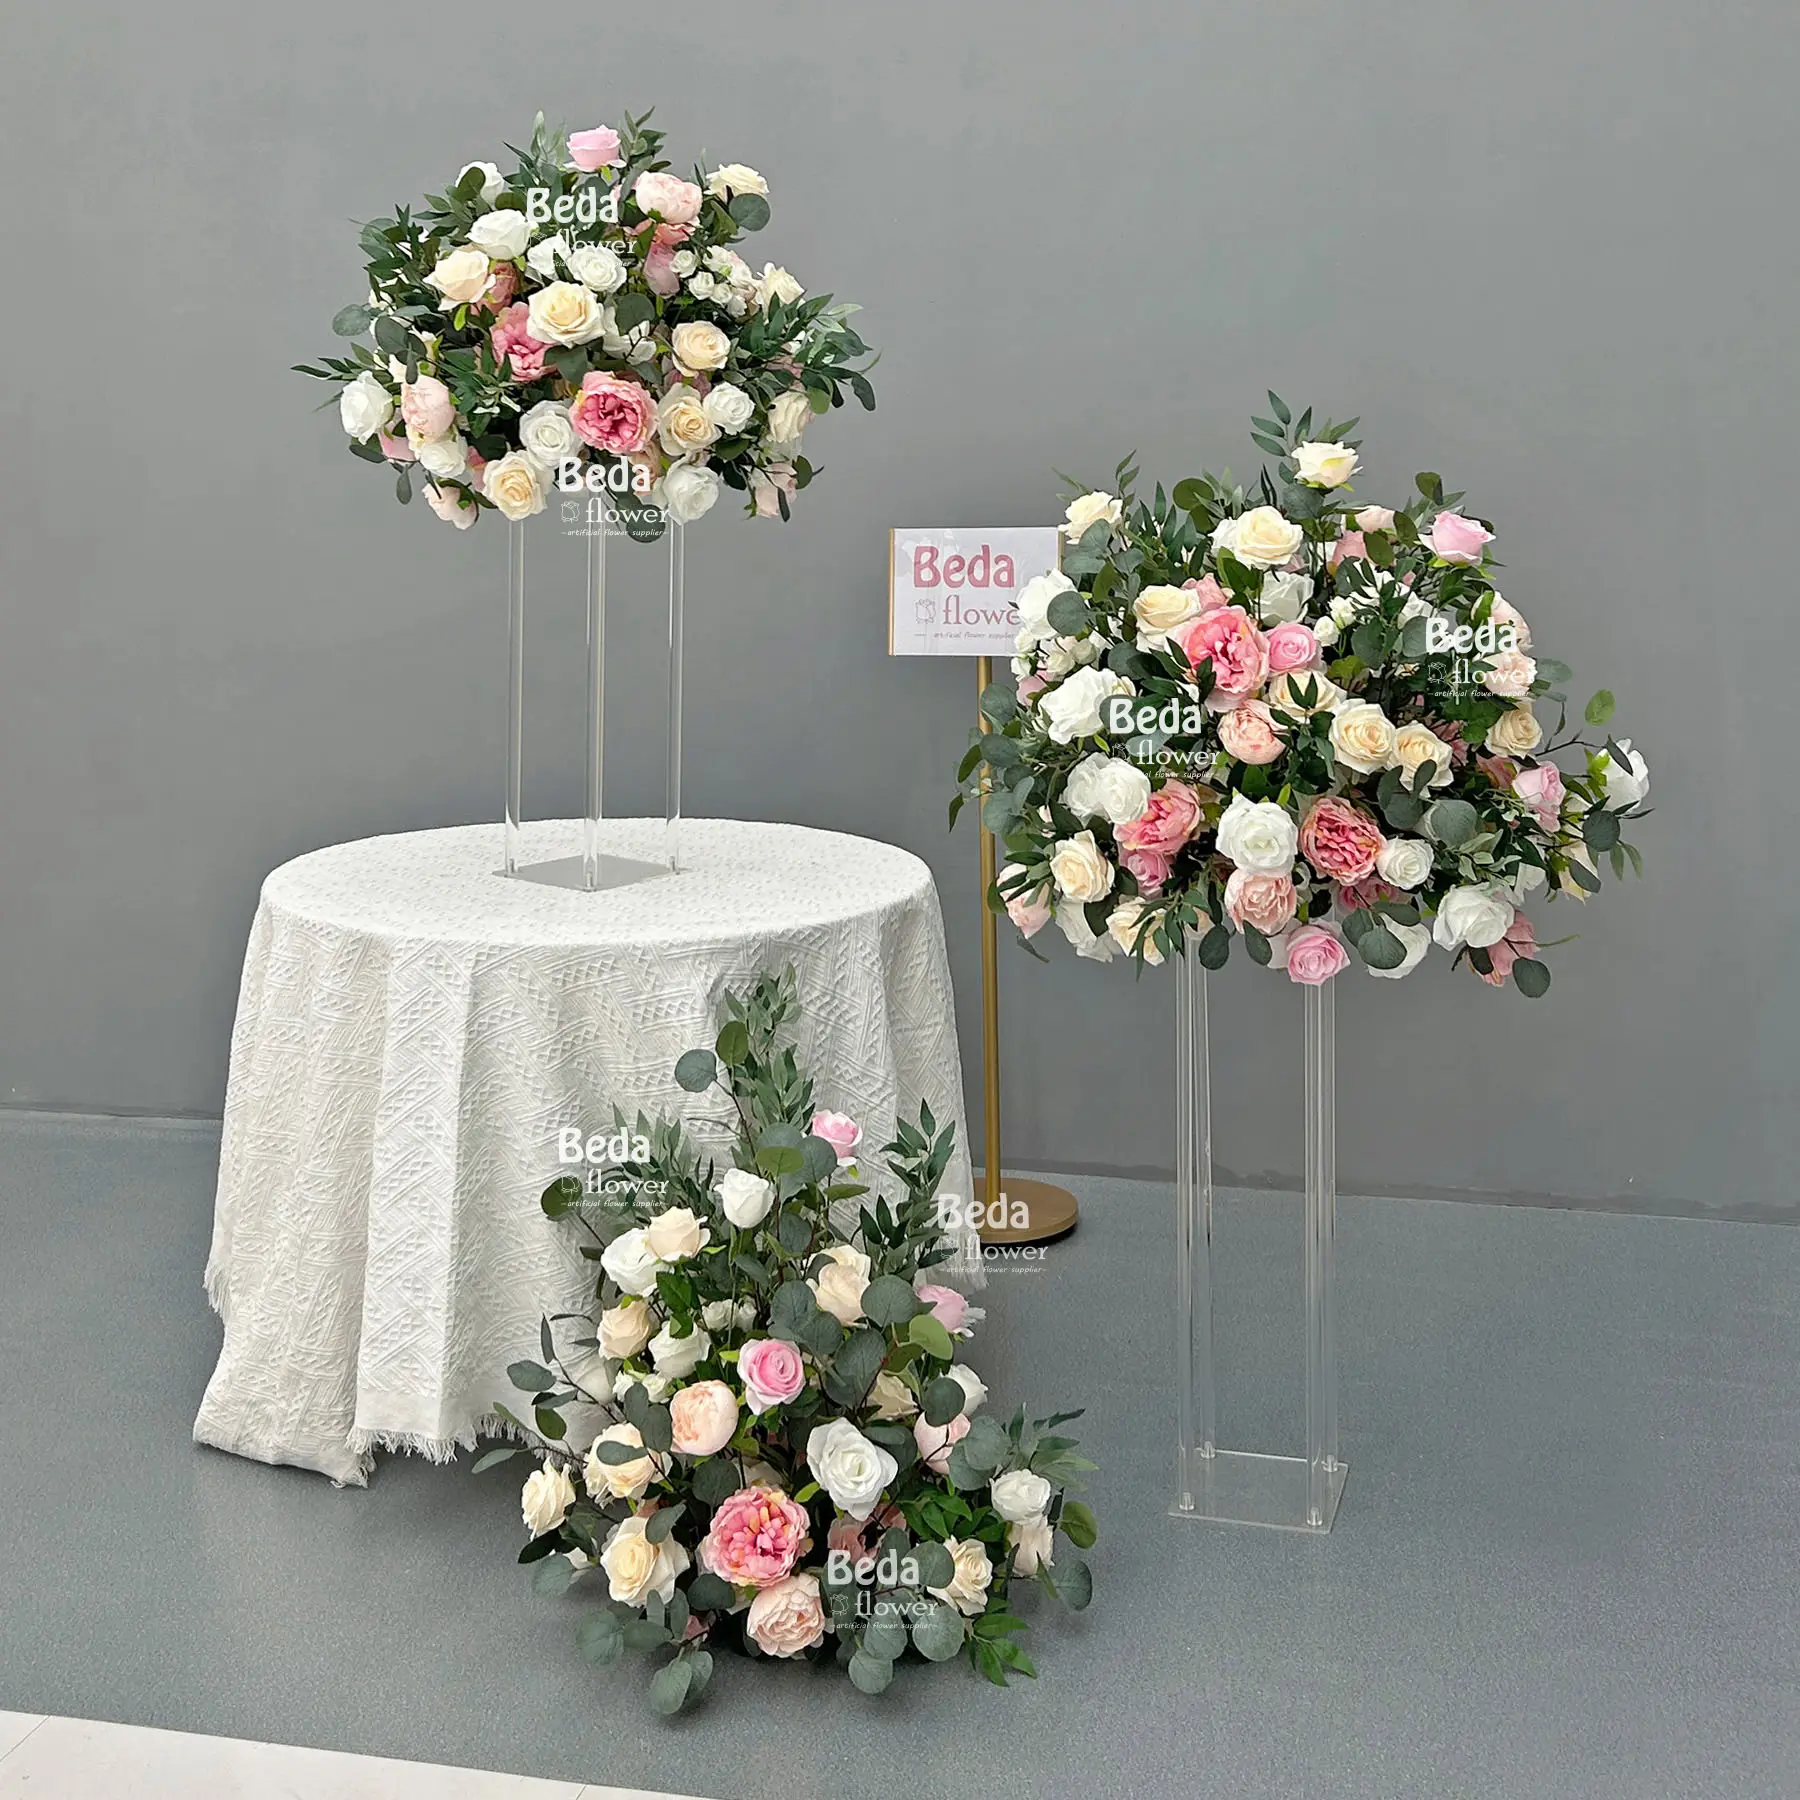 Beda vendita calda centrotavola fiore personalizzato bouquet floreale decorazione per la casa e decorazione del tavolo di ricevimento